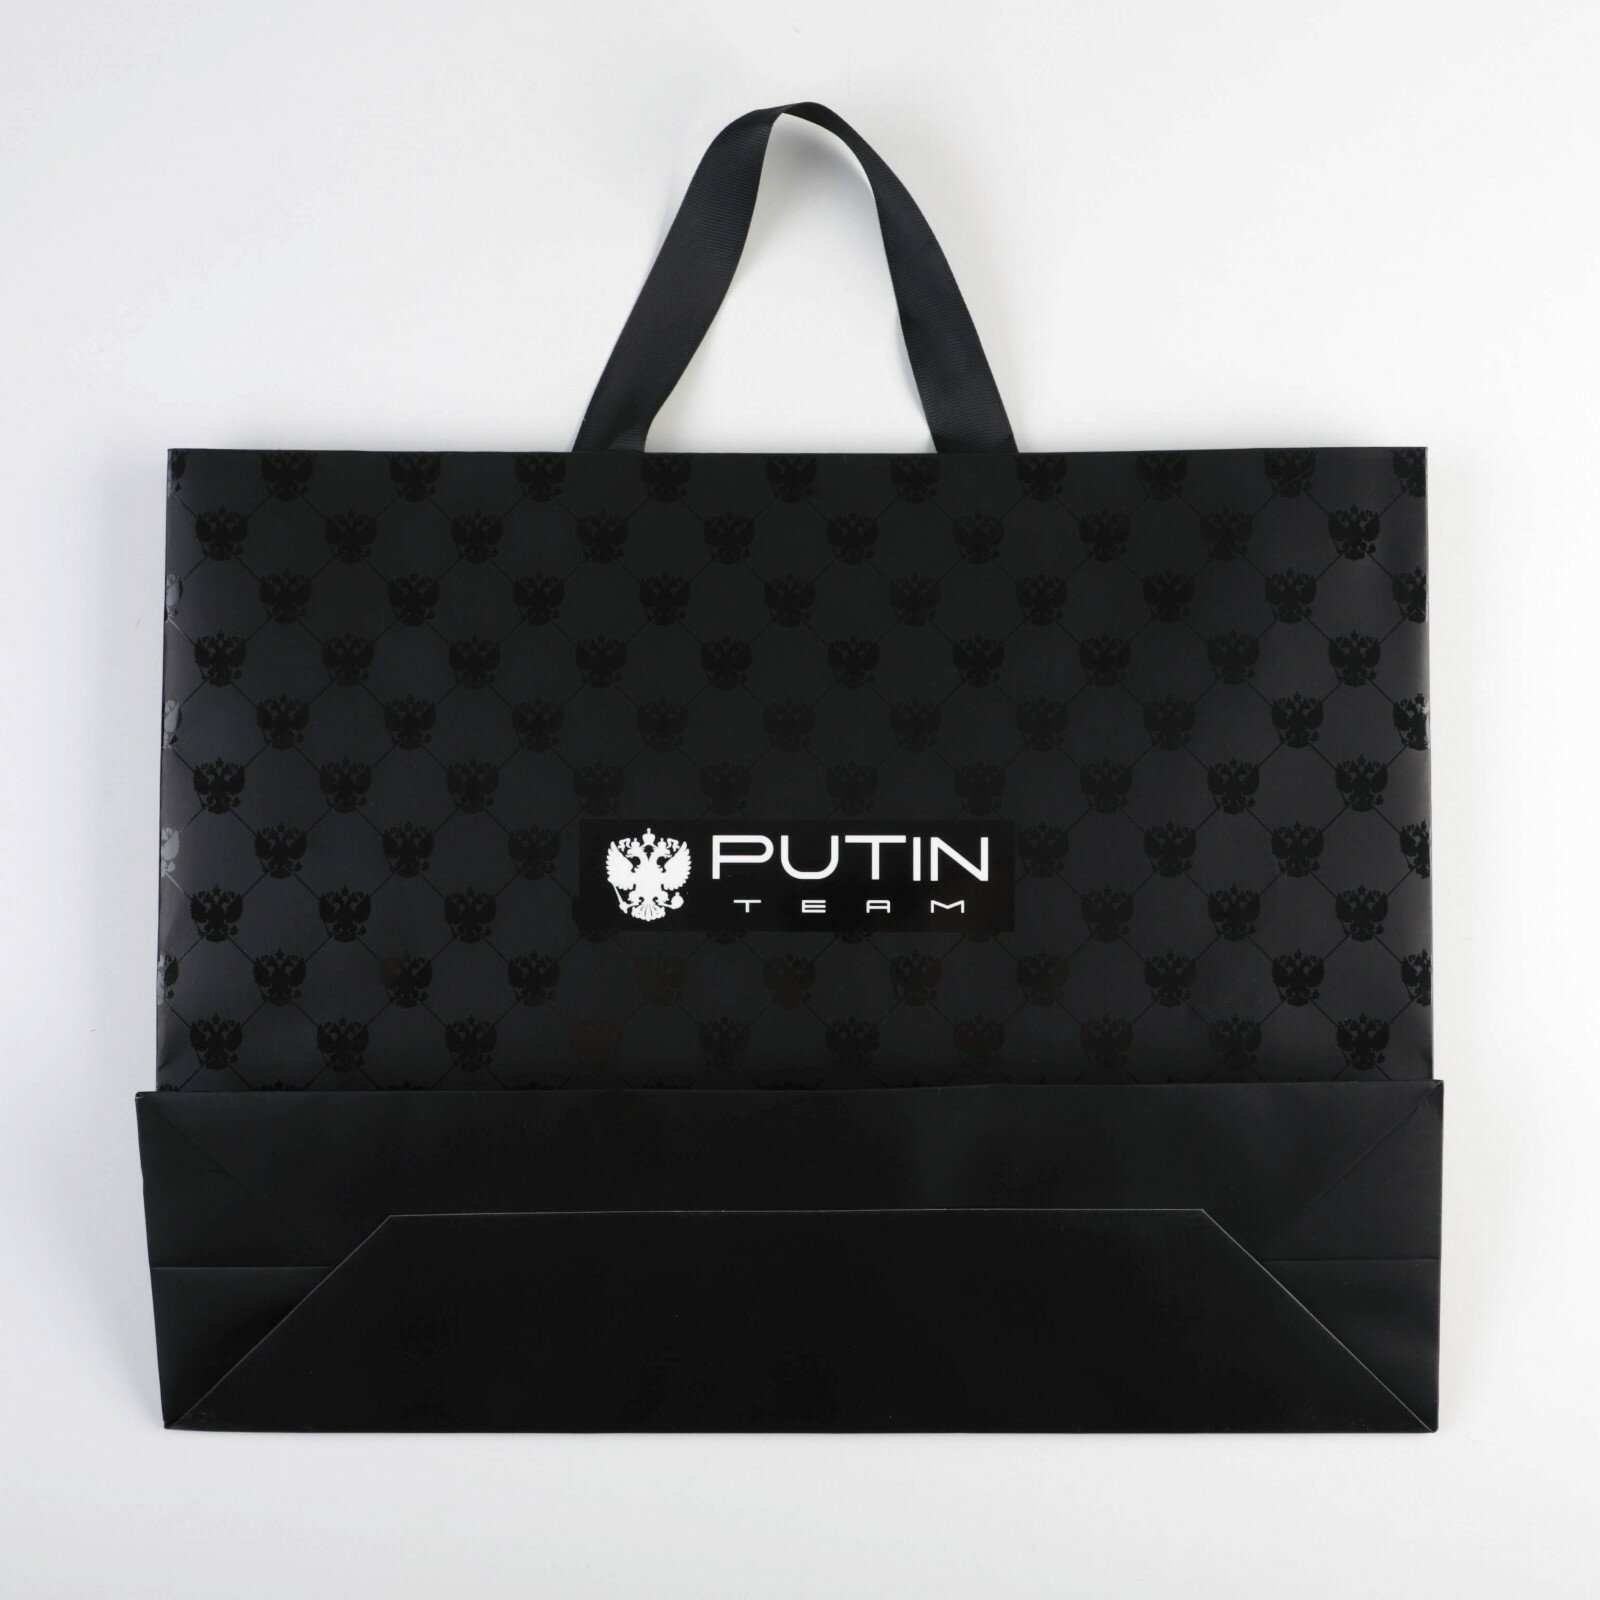 Пакет подарочный "Putin team", L 40 × 31 × 11,5 см